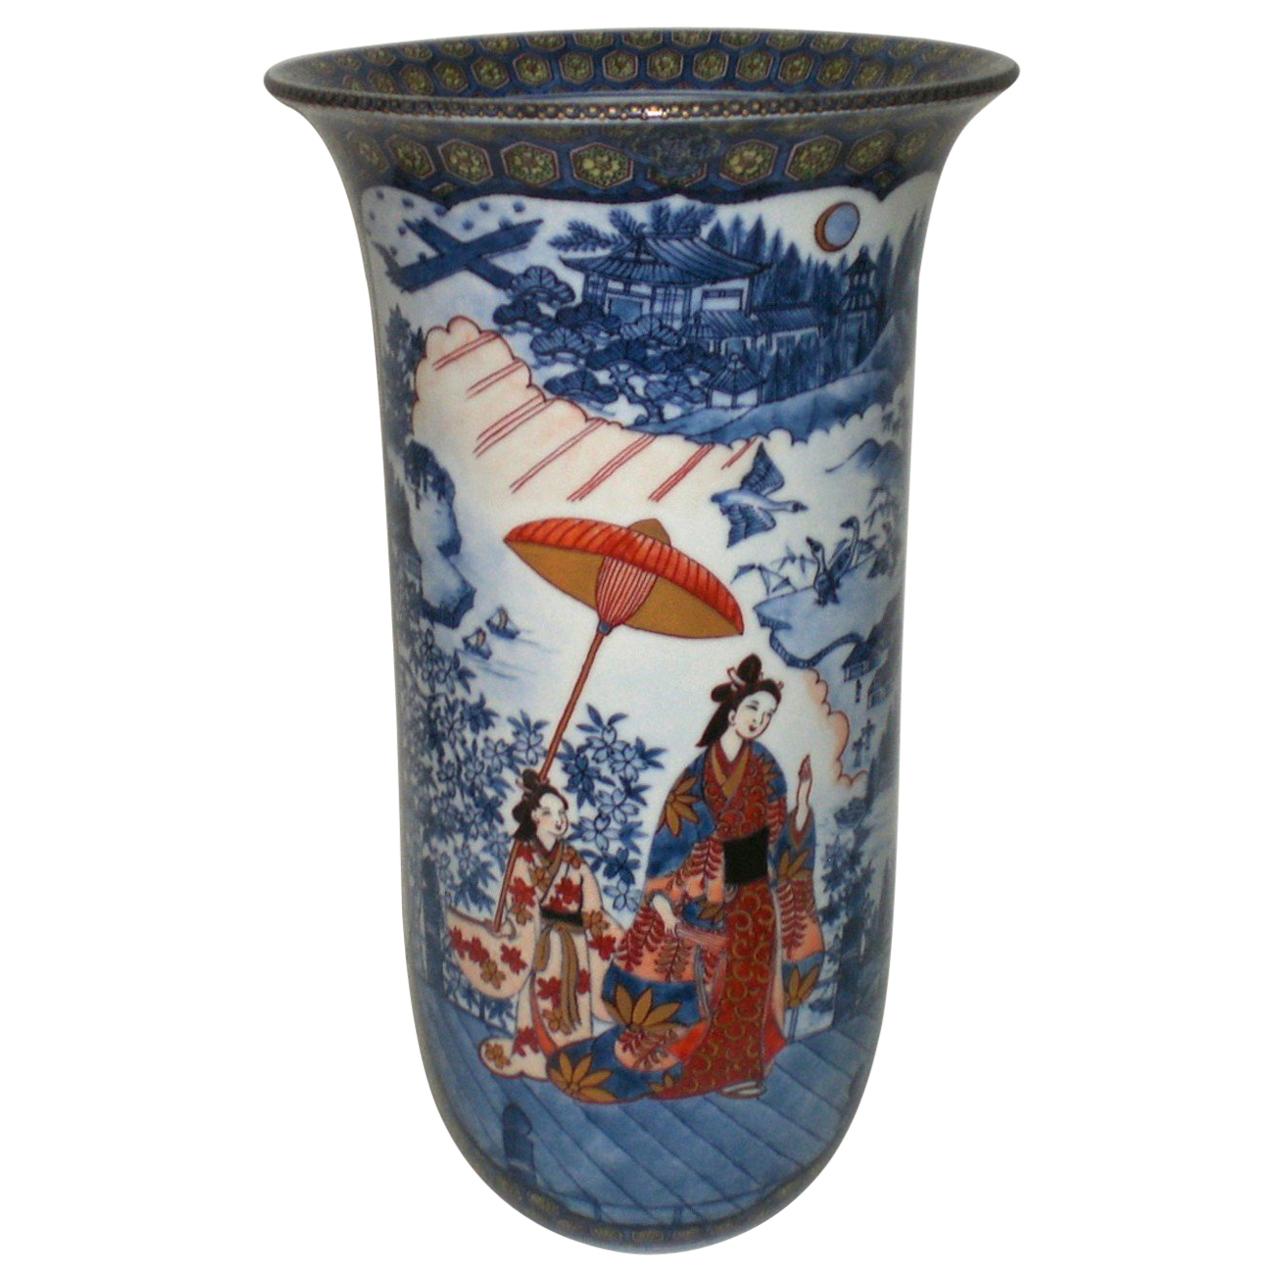 Große japanische zeitgenössische japanische Porzellanvase in Rot, Blau und Grün von Meisterkünstler